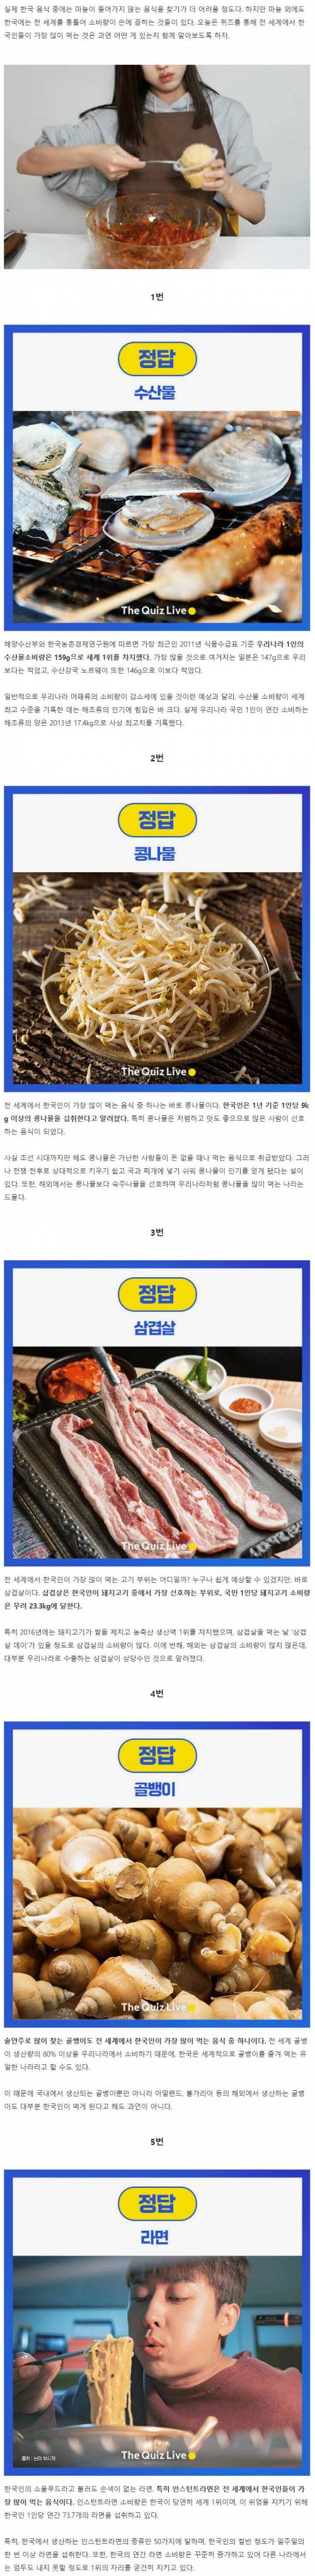 세계에서 한국인이 가장 많이 먹는 음식